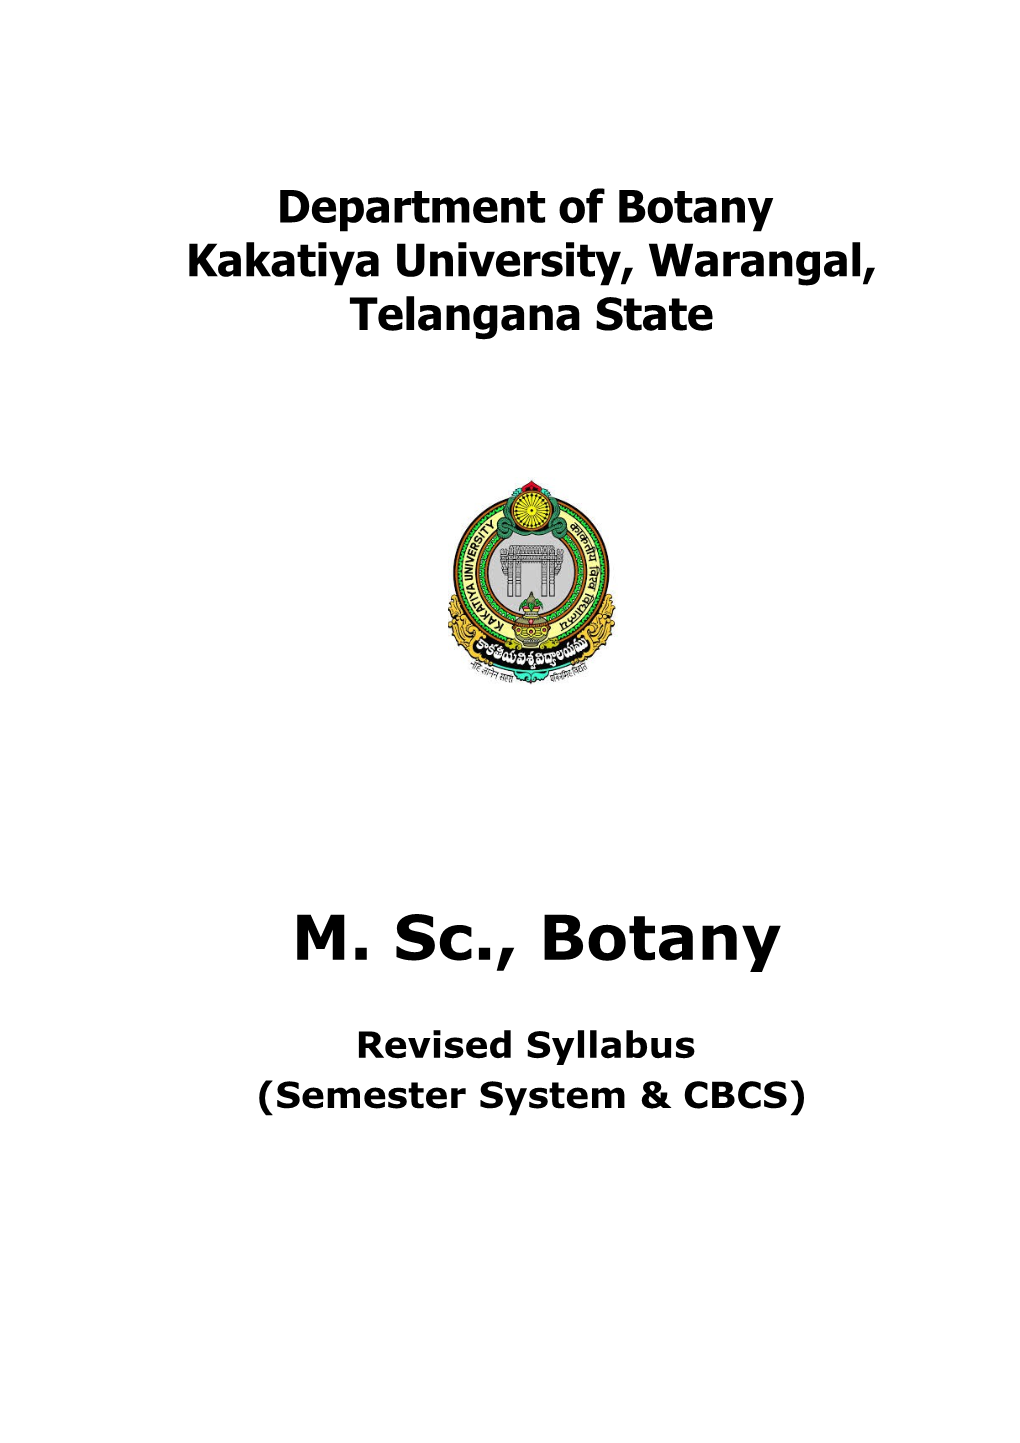 Kakatiya University, Warangal, Telangana State